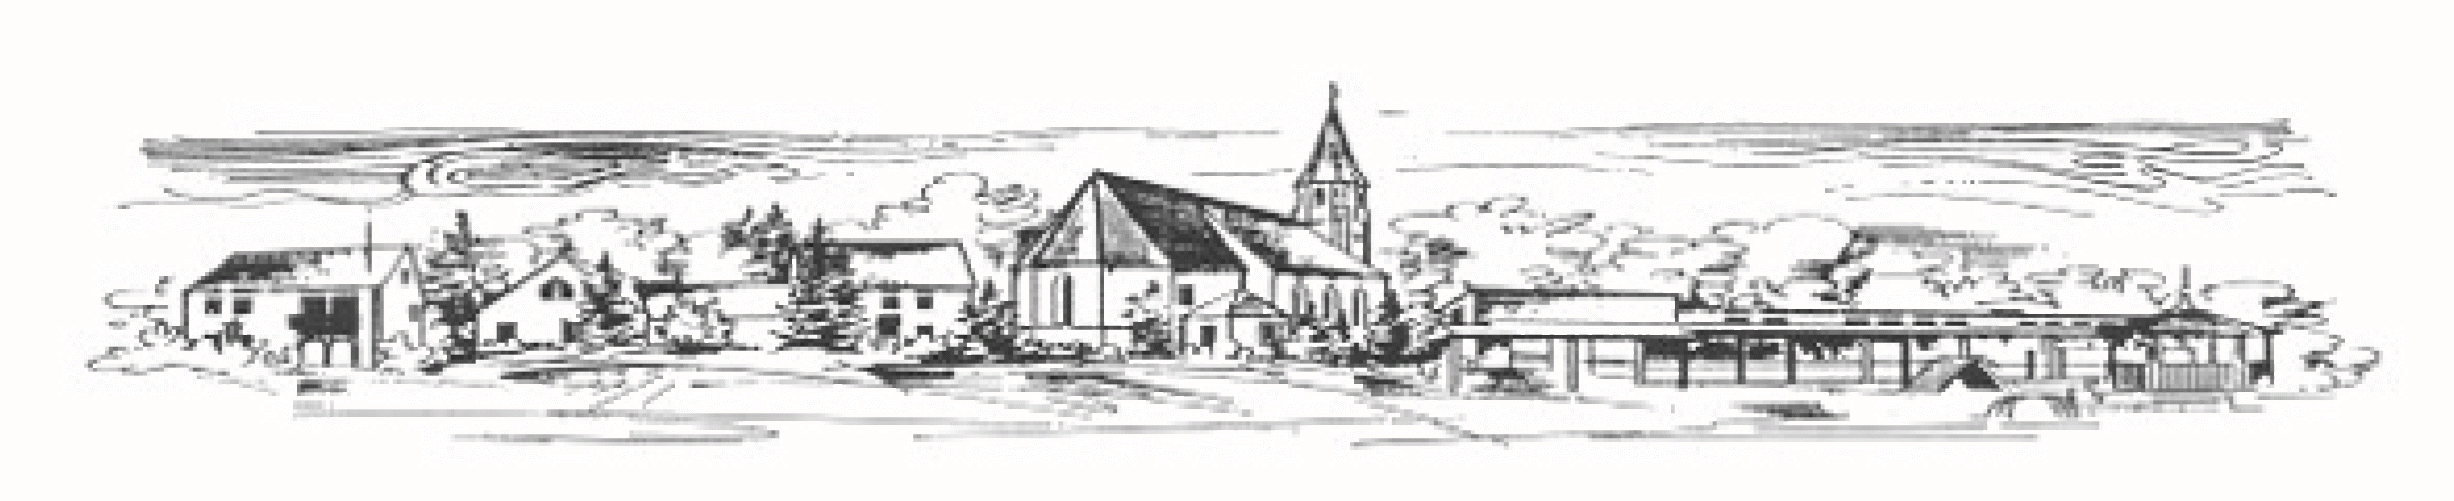 Evang. Kirchengemeinde Schalkhausen